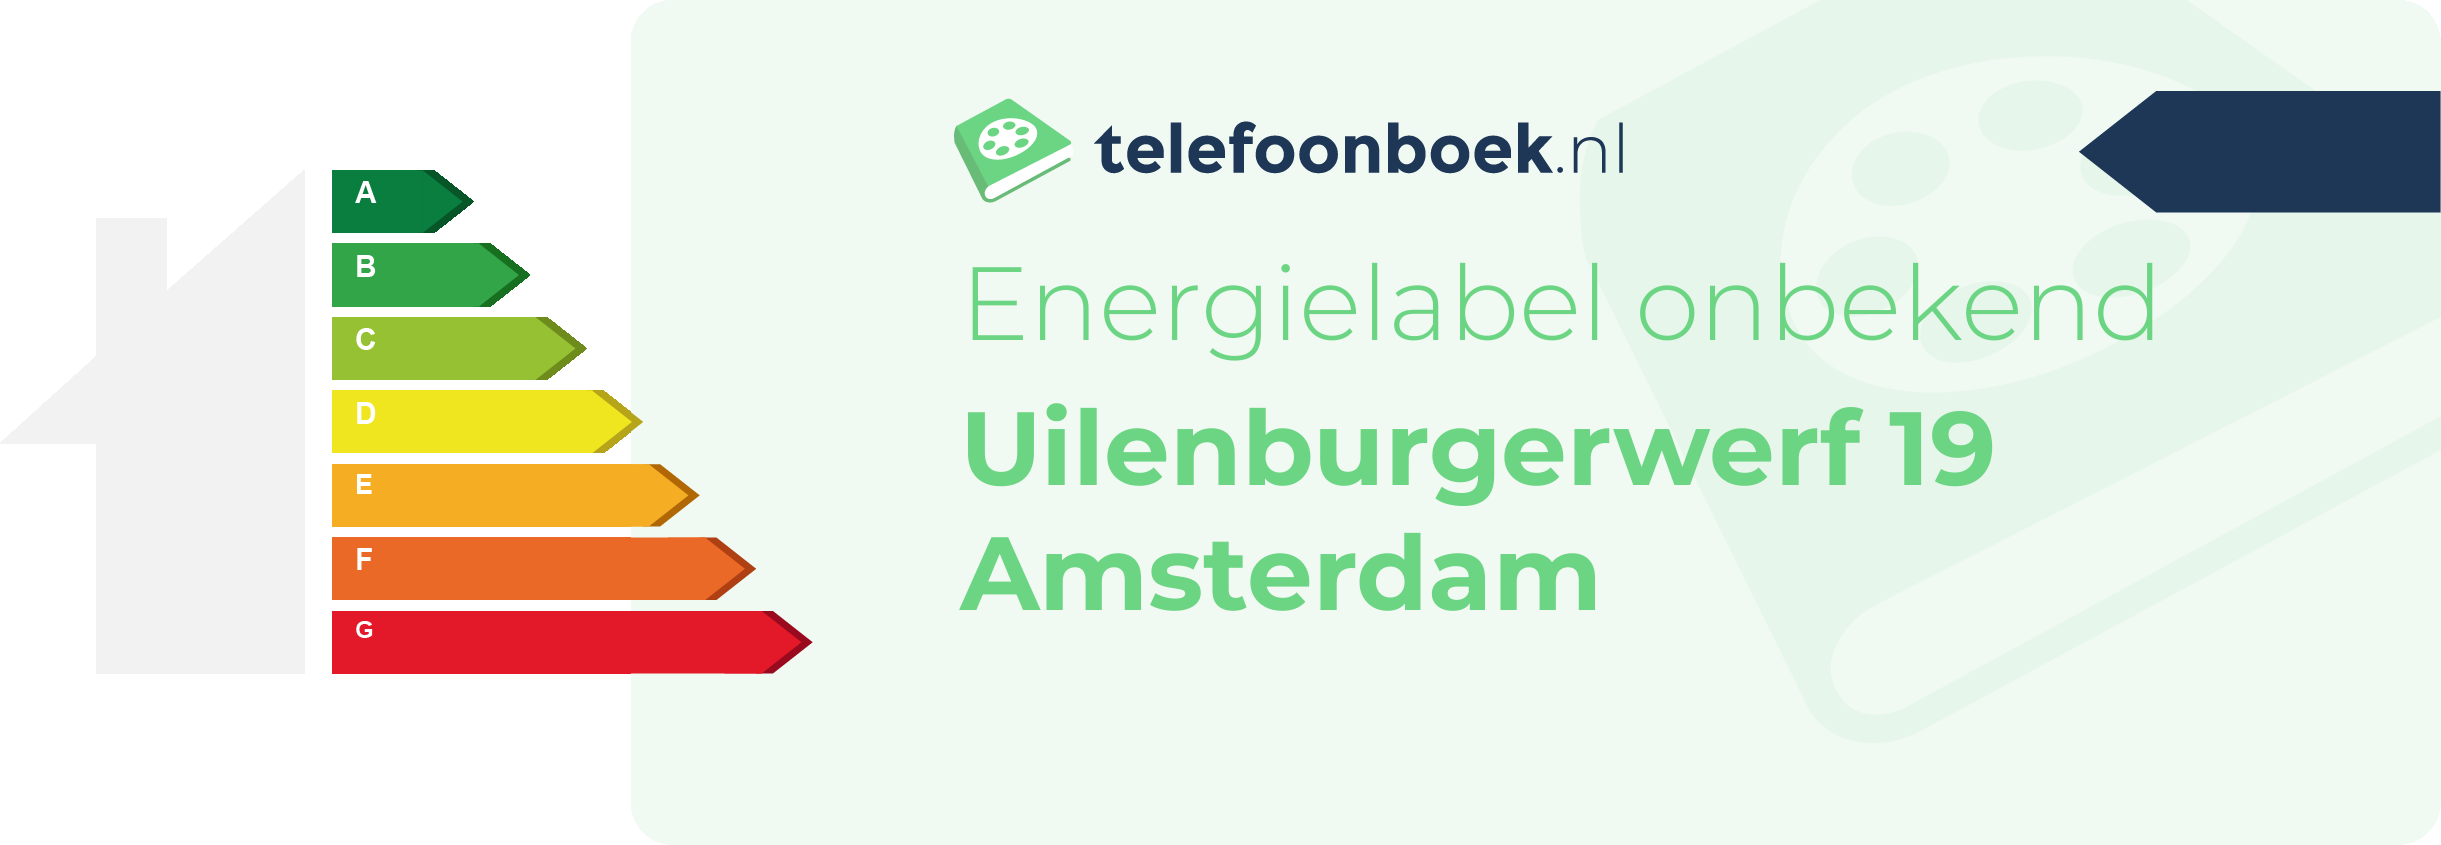 Energielabel Uilenburgerwerf 19 Amsterdam